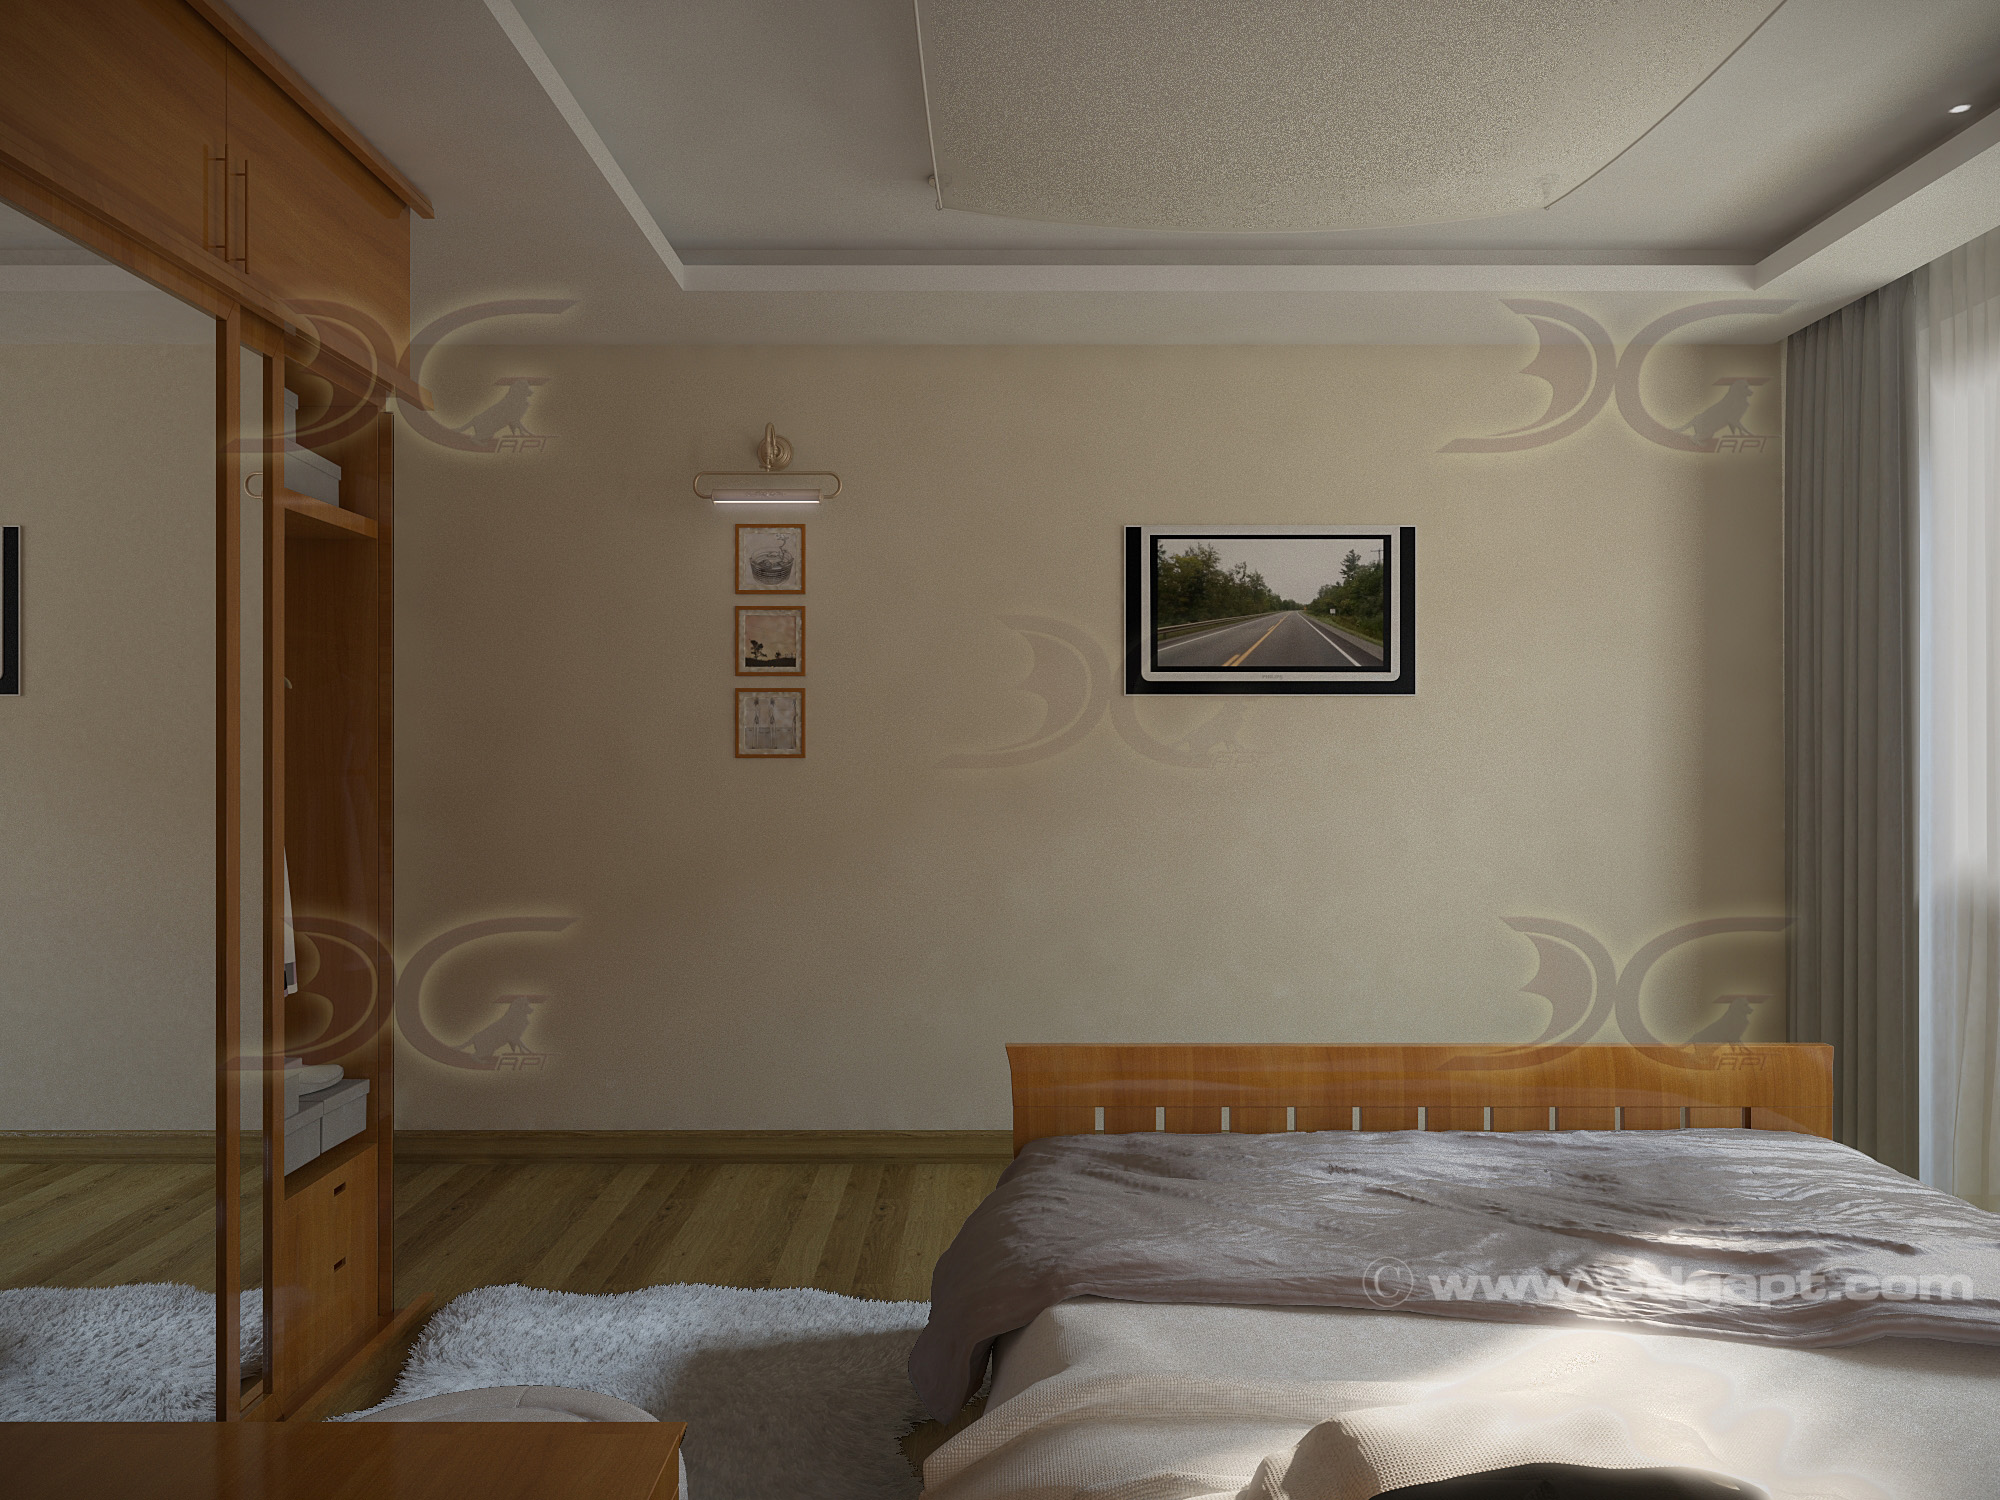 Architecture Interior Bedroom V2 -8